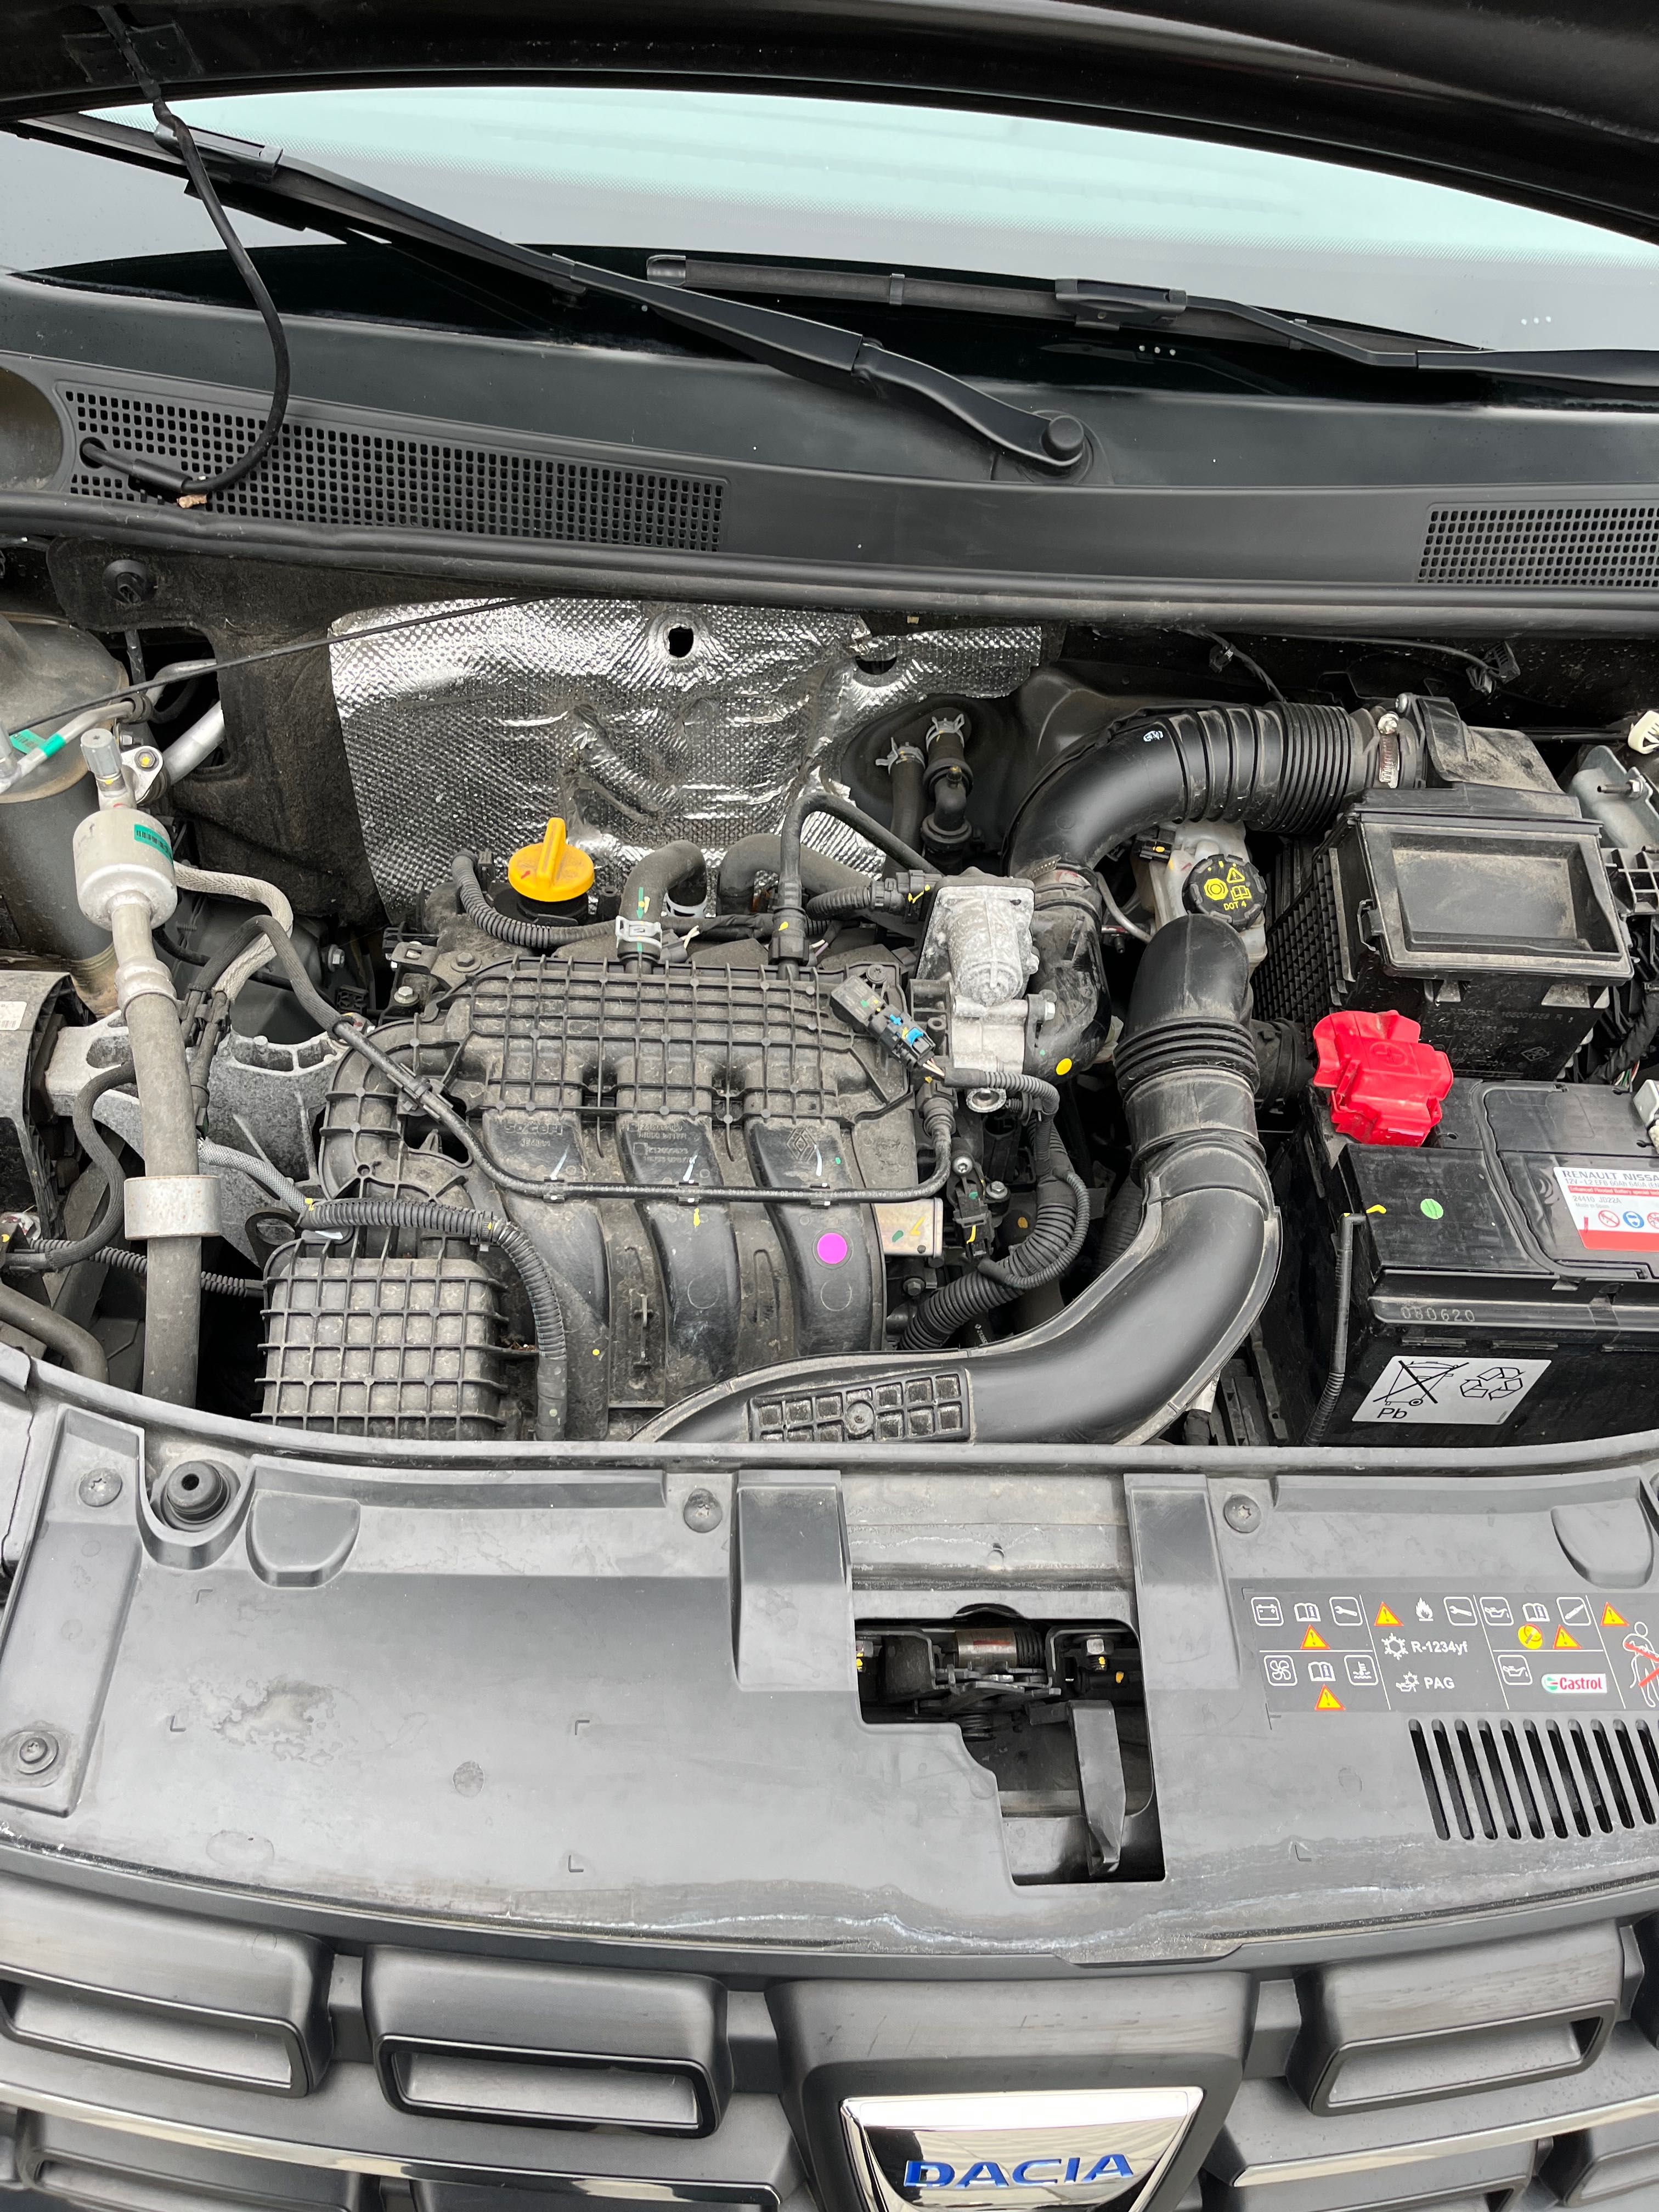 Dacia Sandero 1,0 benzyna ,2020 rok,klimatyzacja,el szyby,lusterka .